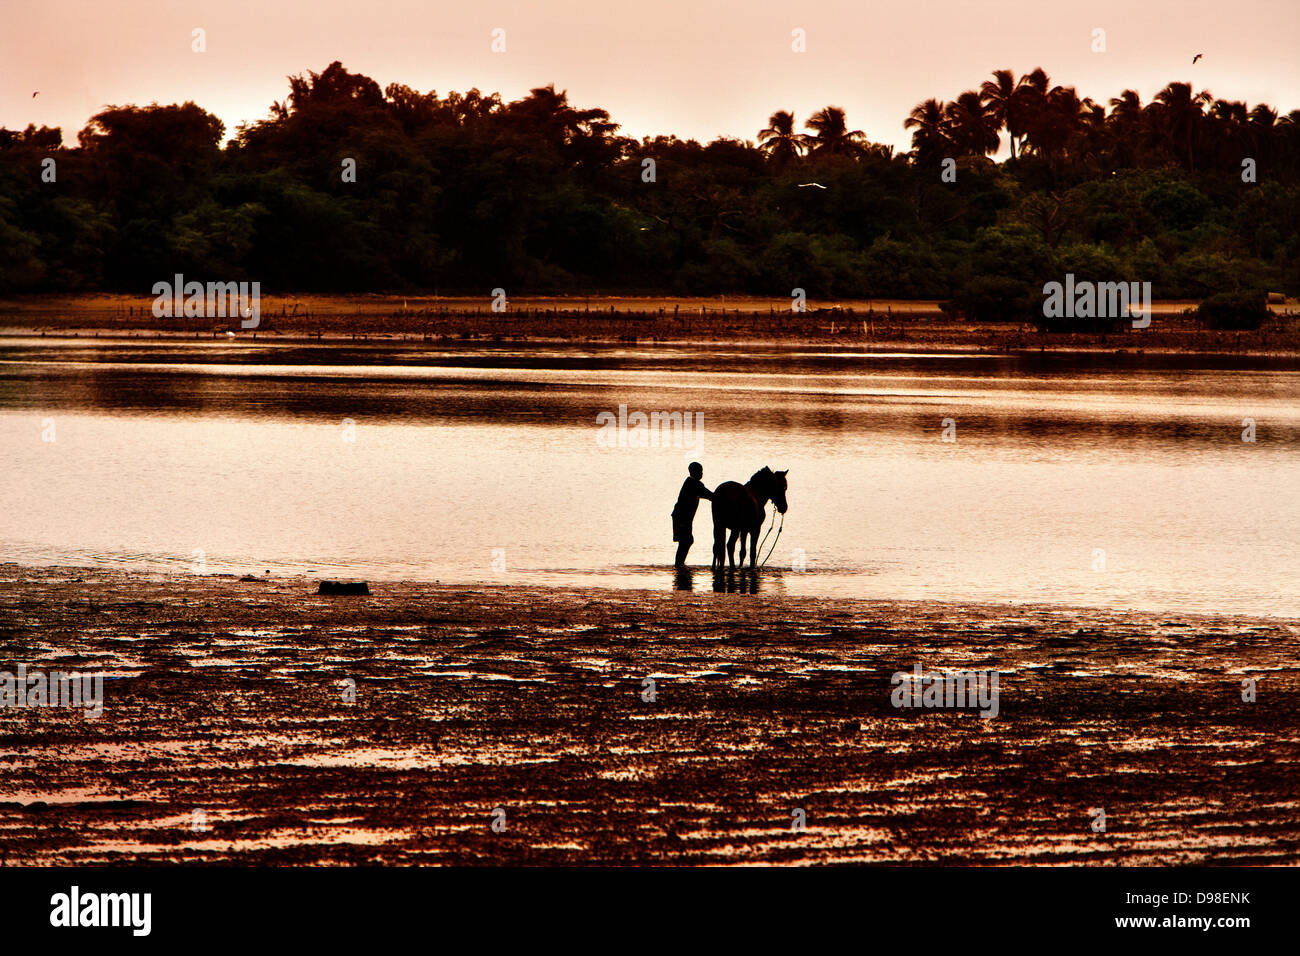 Afrique Sénégal Afrique de l'Ouest l'île de Fadiouth, l'homme lave son cheval sur la plage Banque D'Images